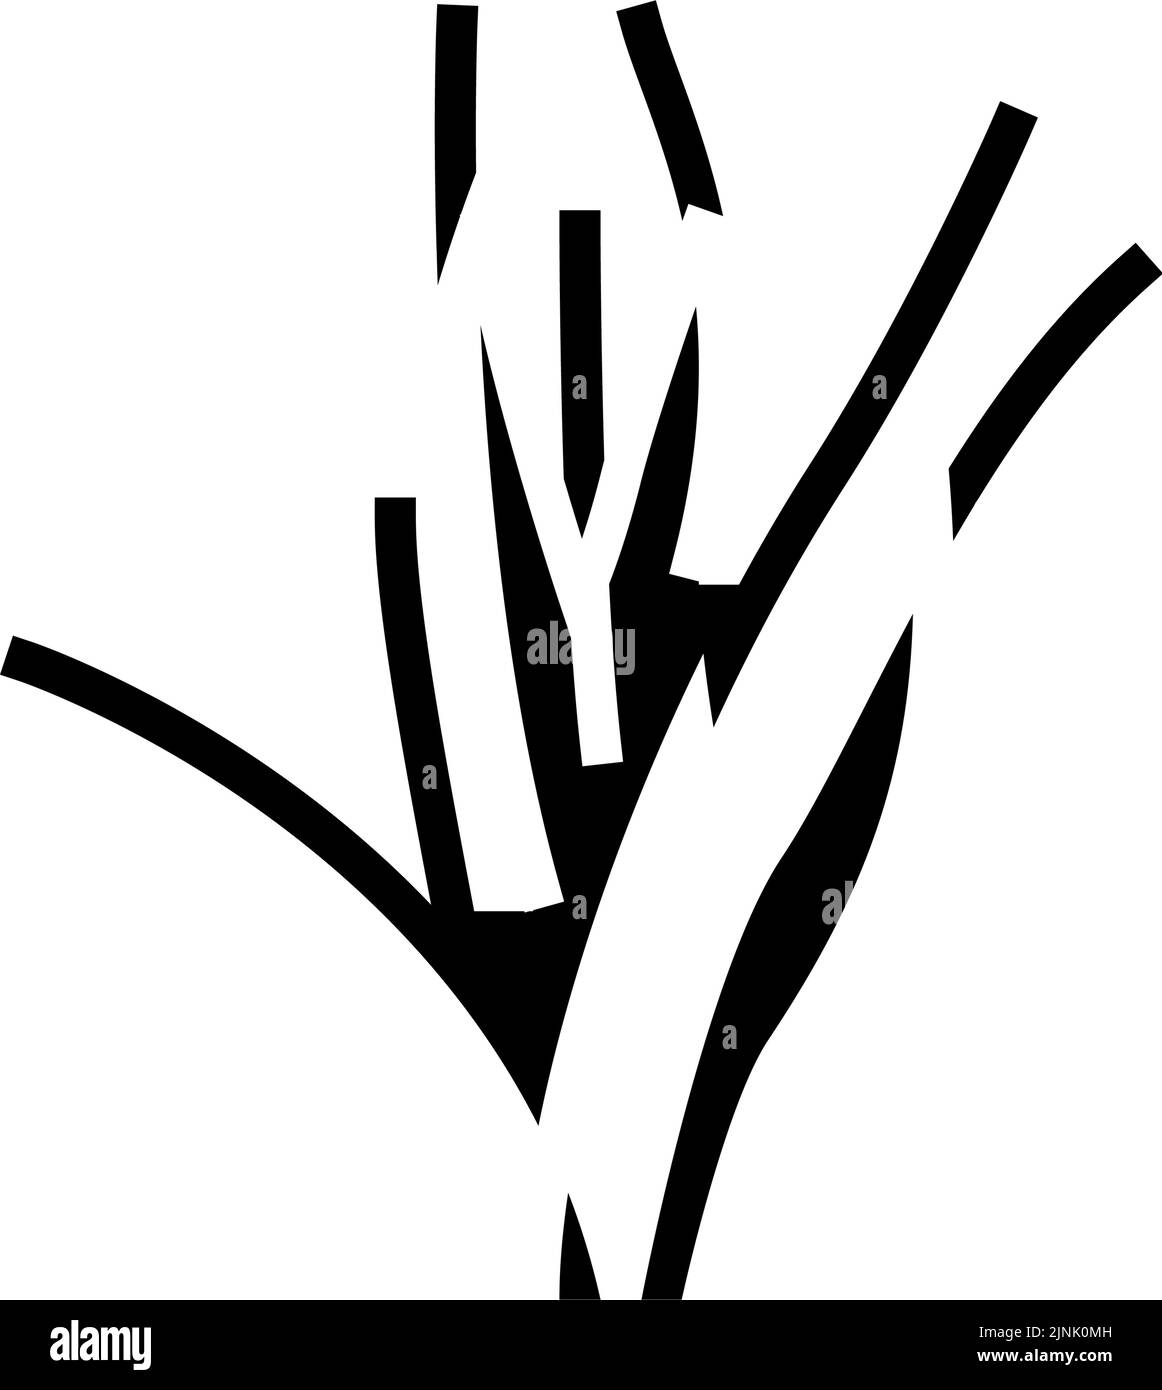 Vektorgrafik für symbole der vallisneria spiralis Glyphe Stock Vektor